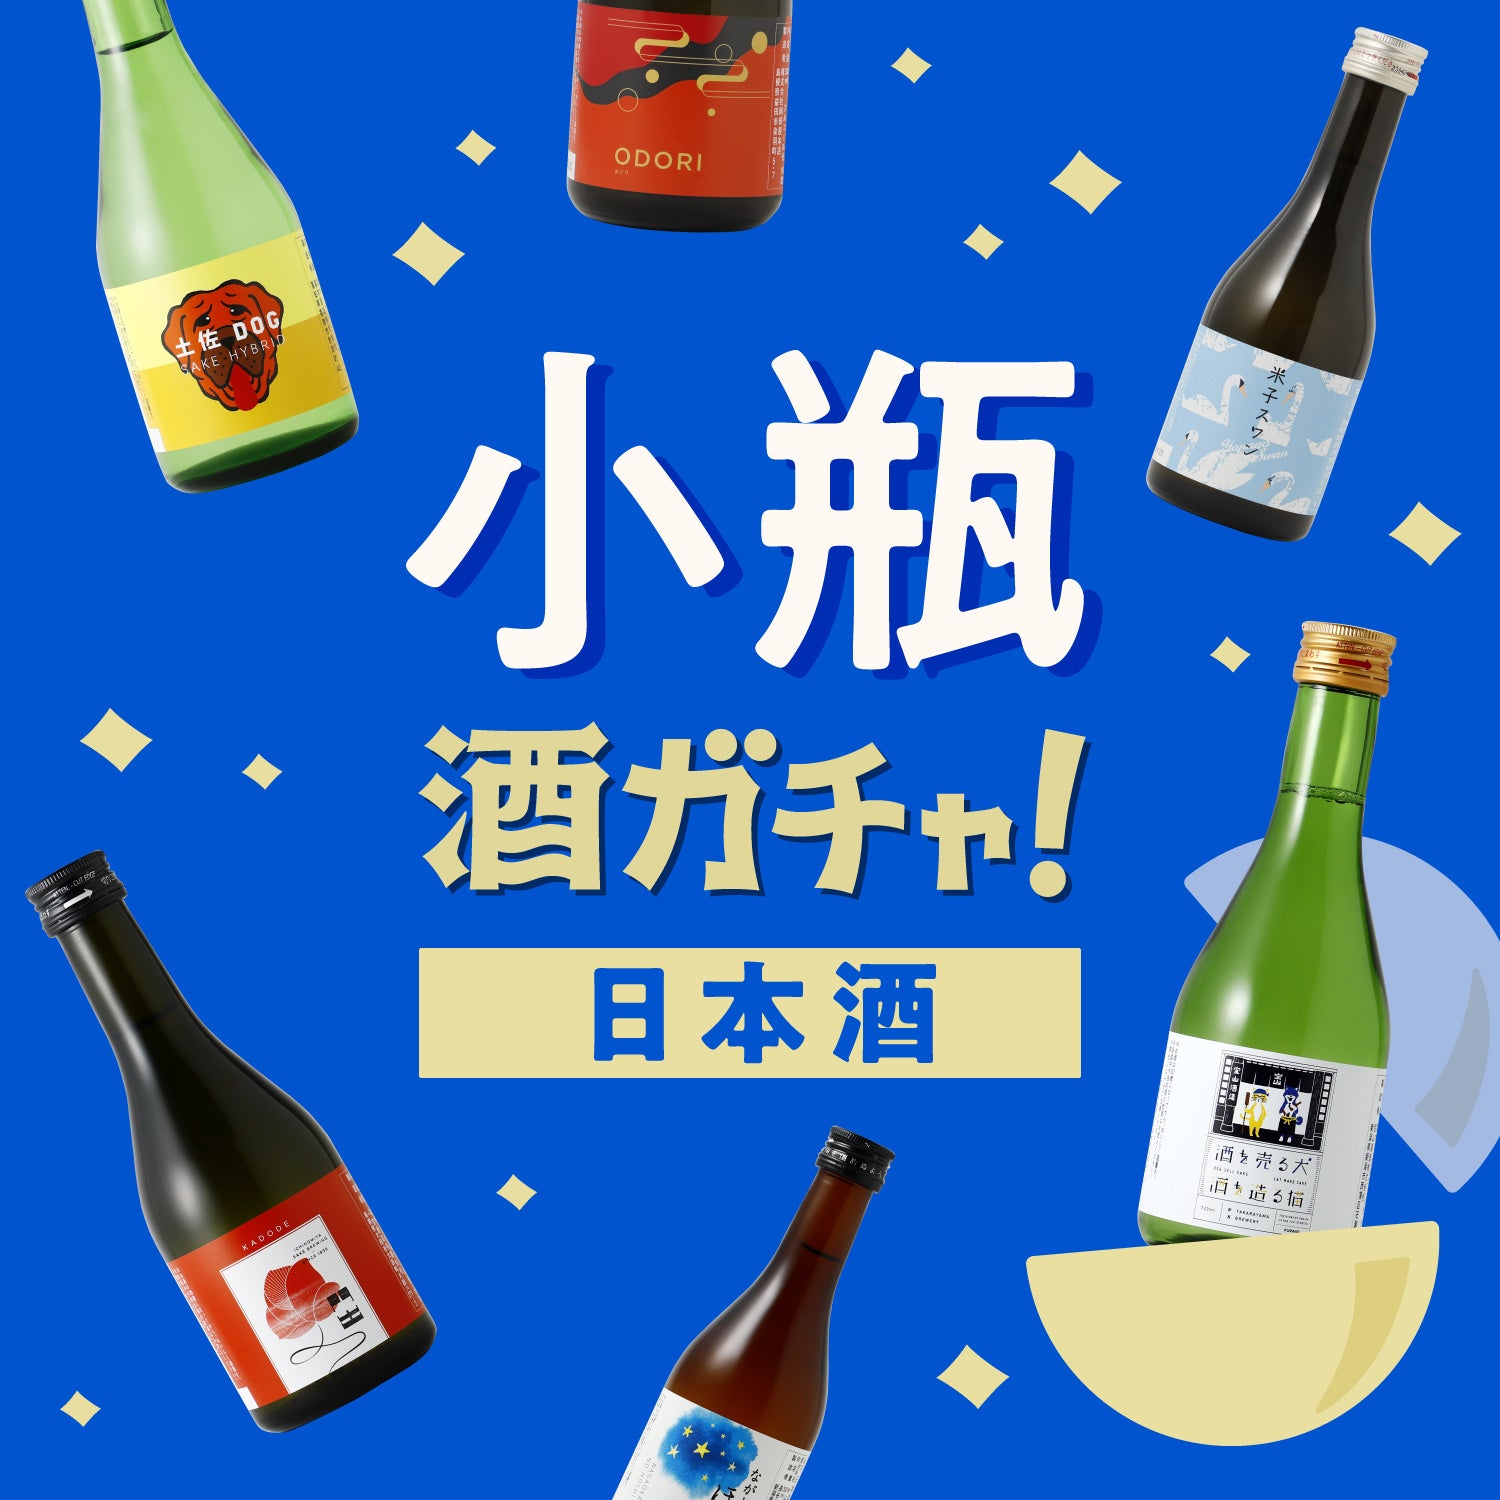 【日本酒】小瓶4連酒ガチャ